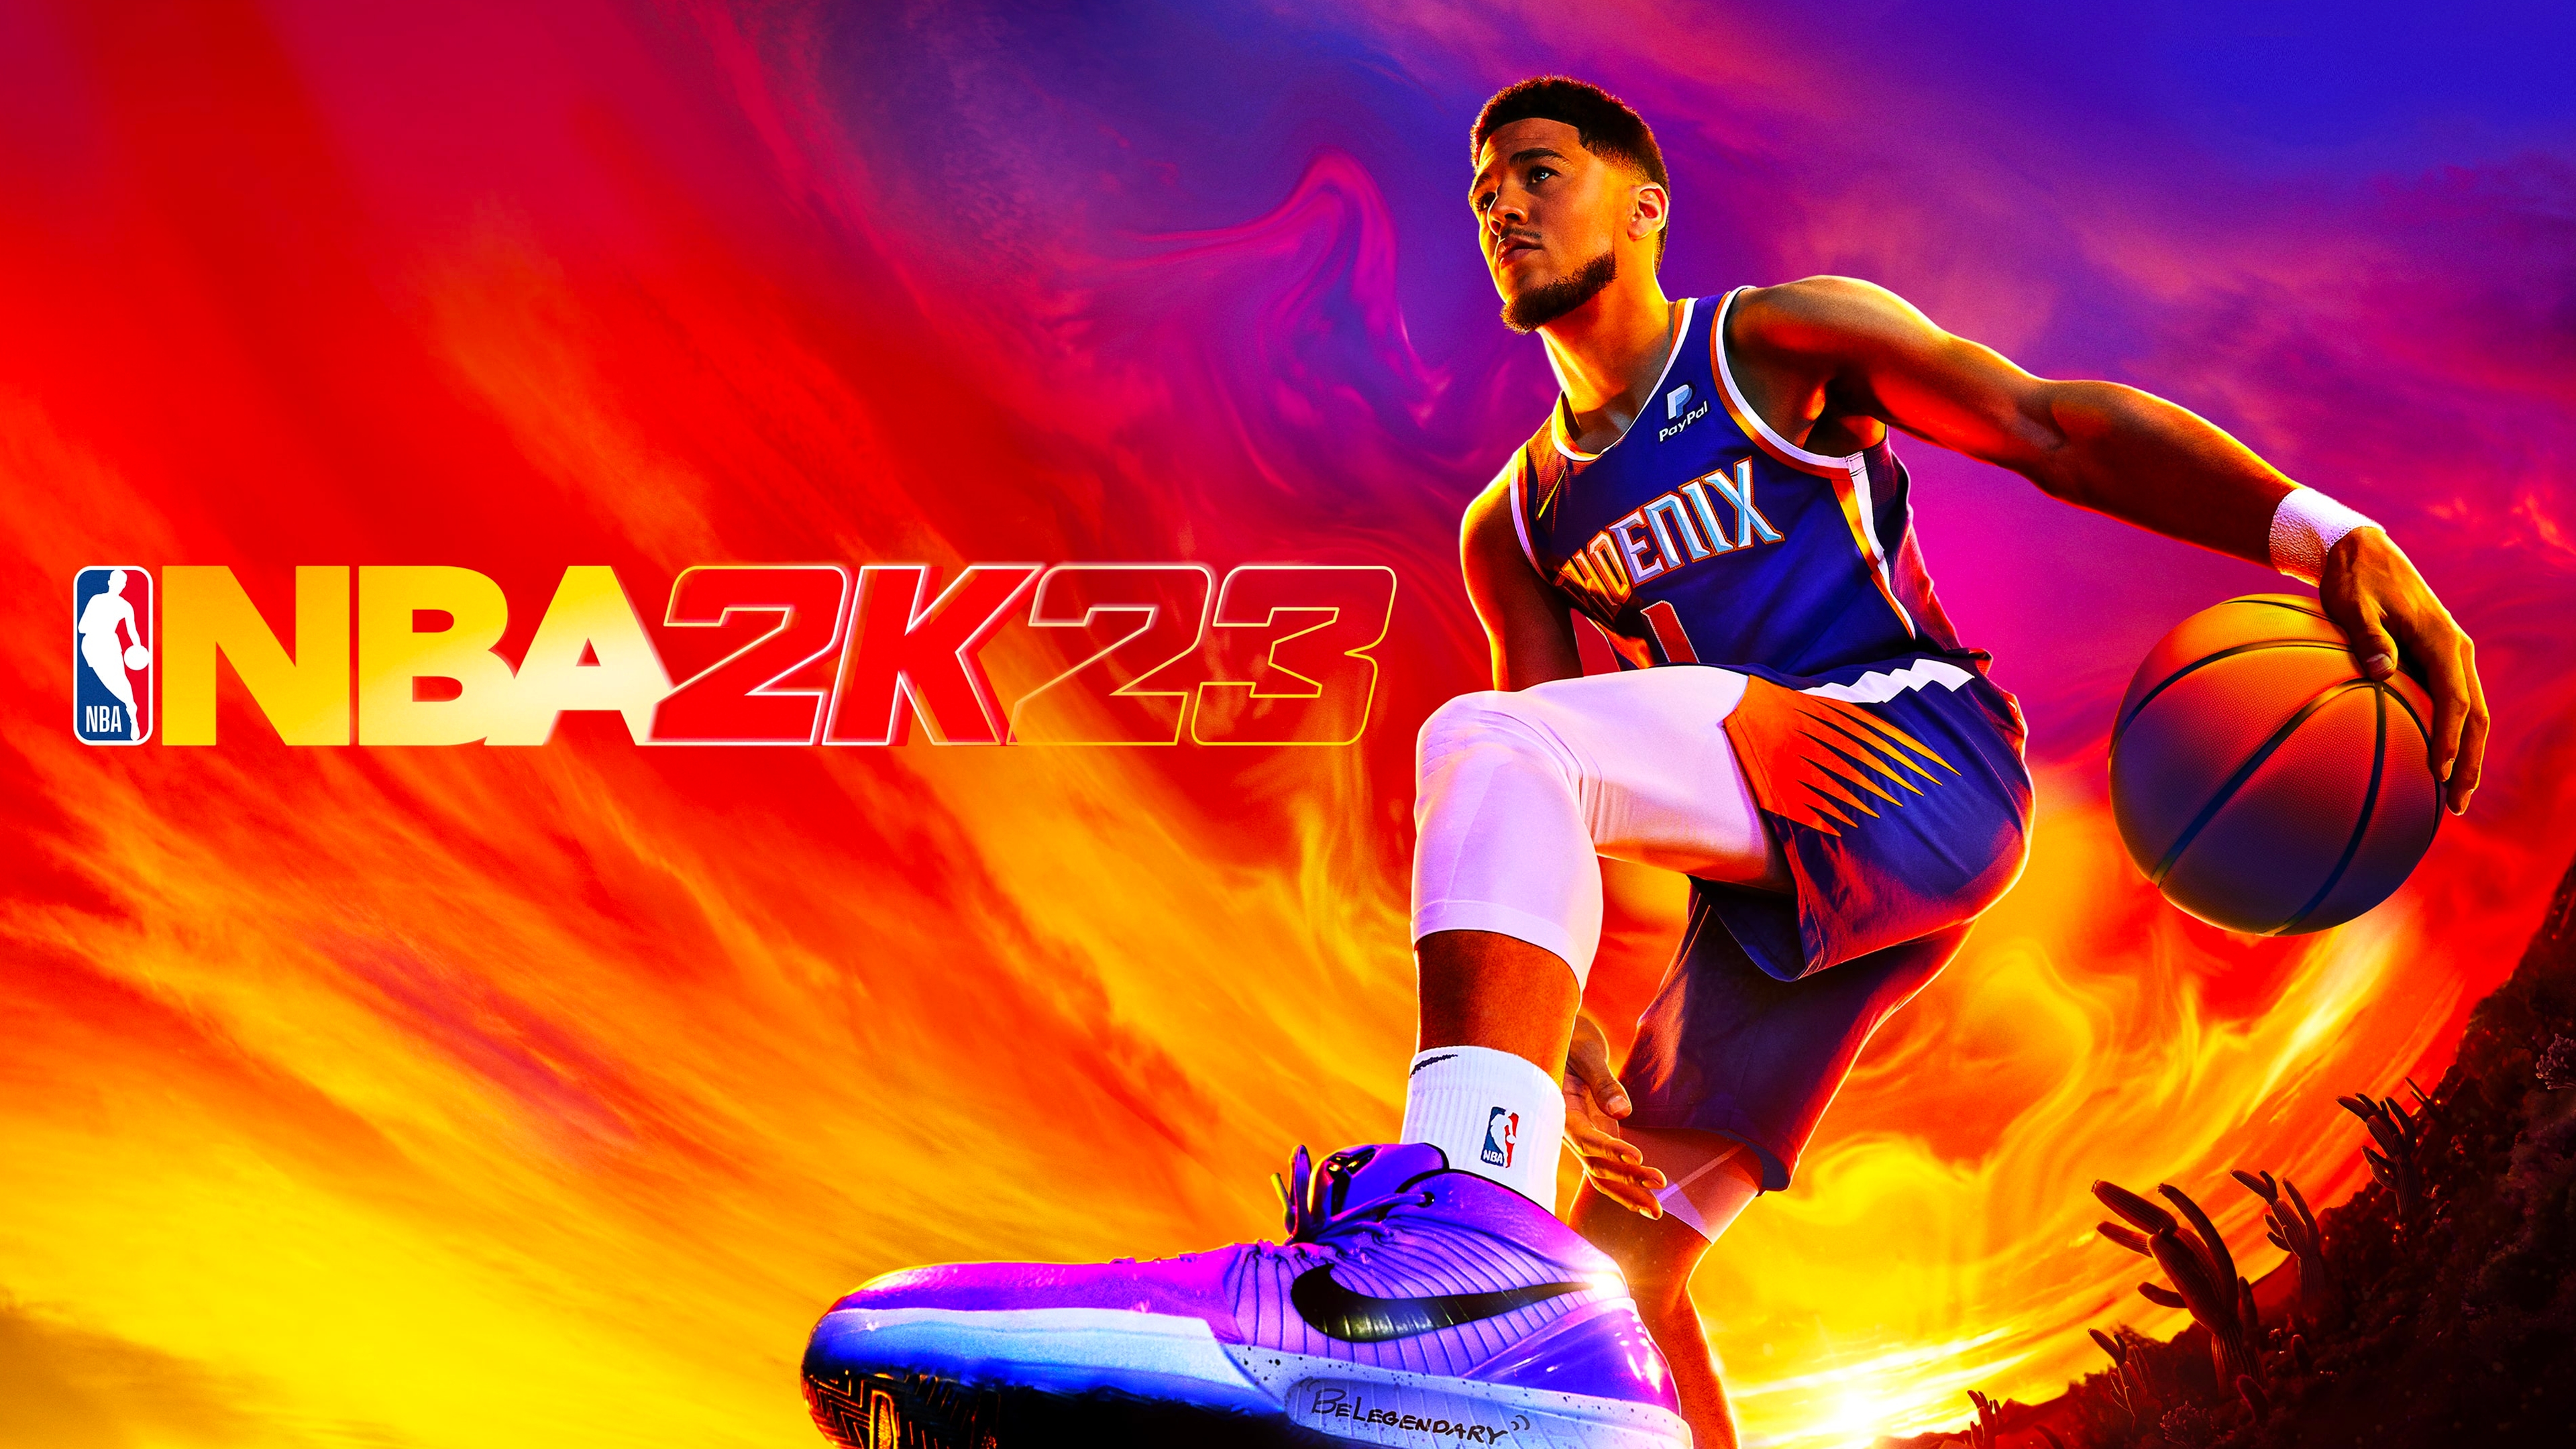 Dernières nouvelles de NBA 2K23 : Date de sortie, couverture